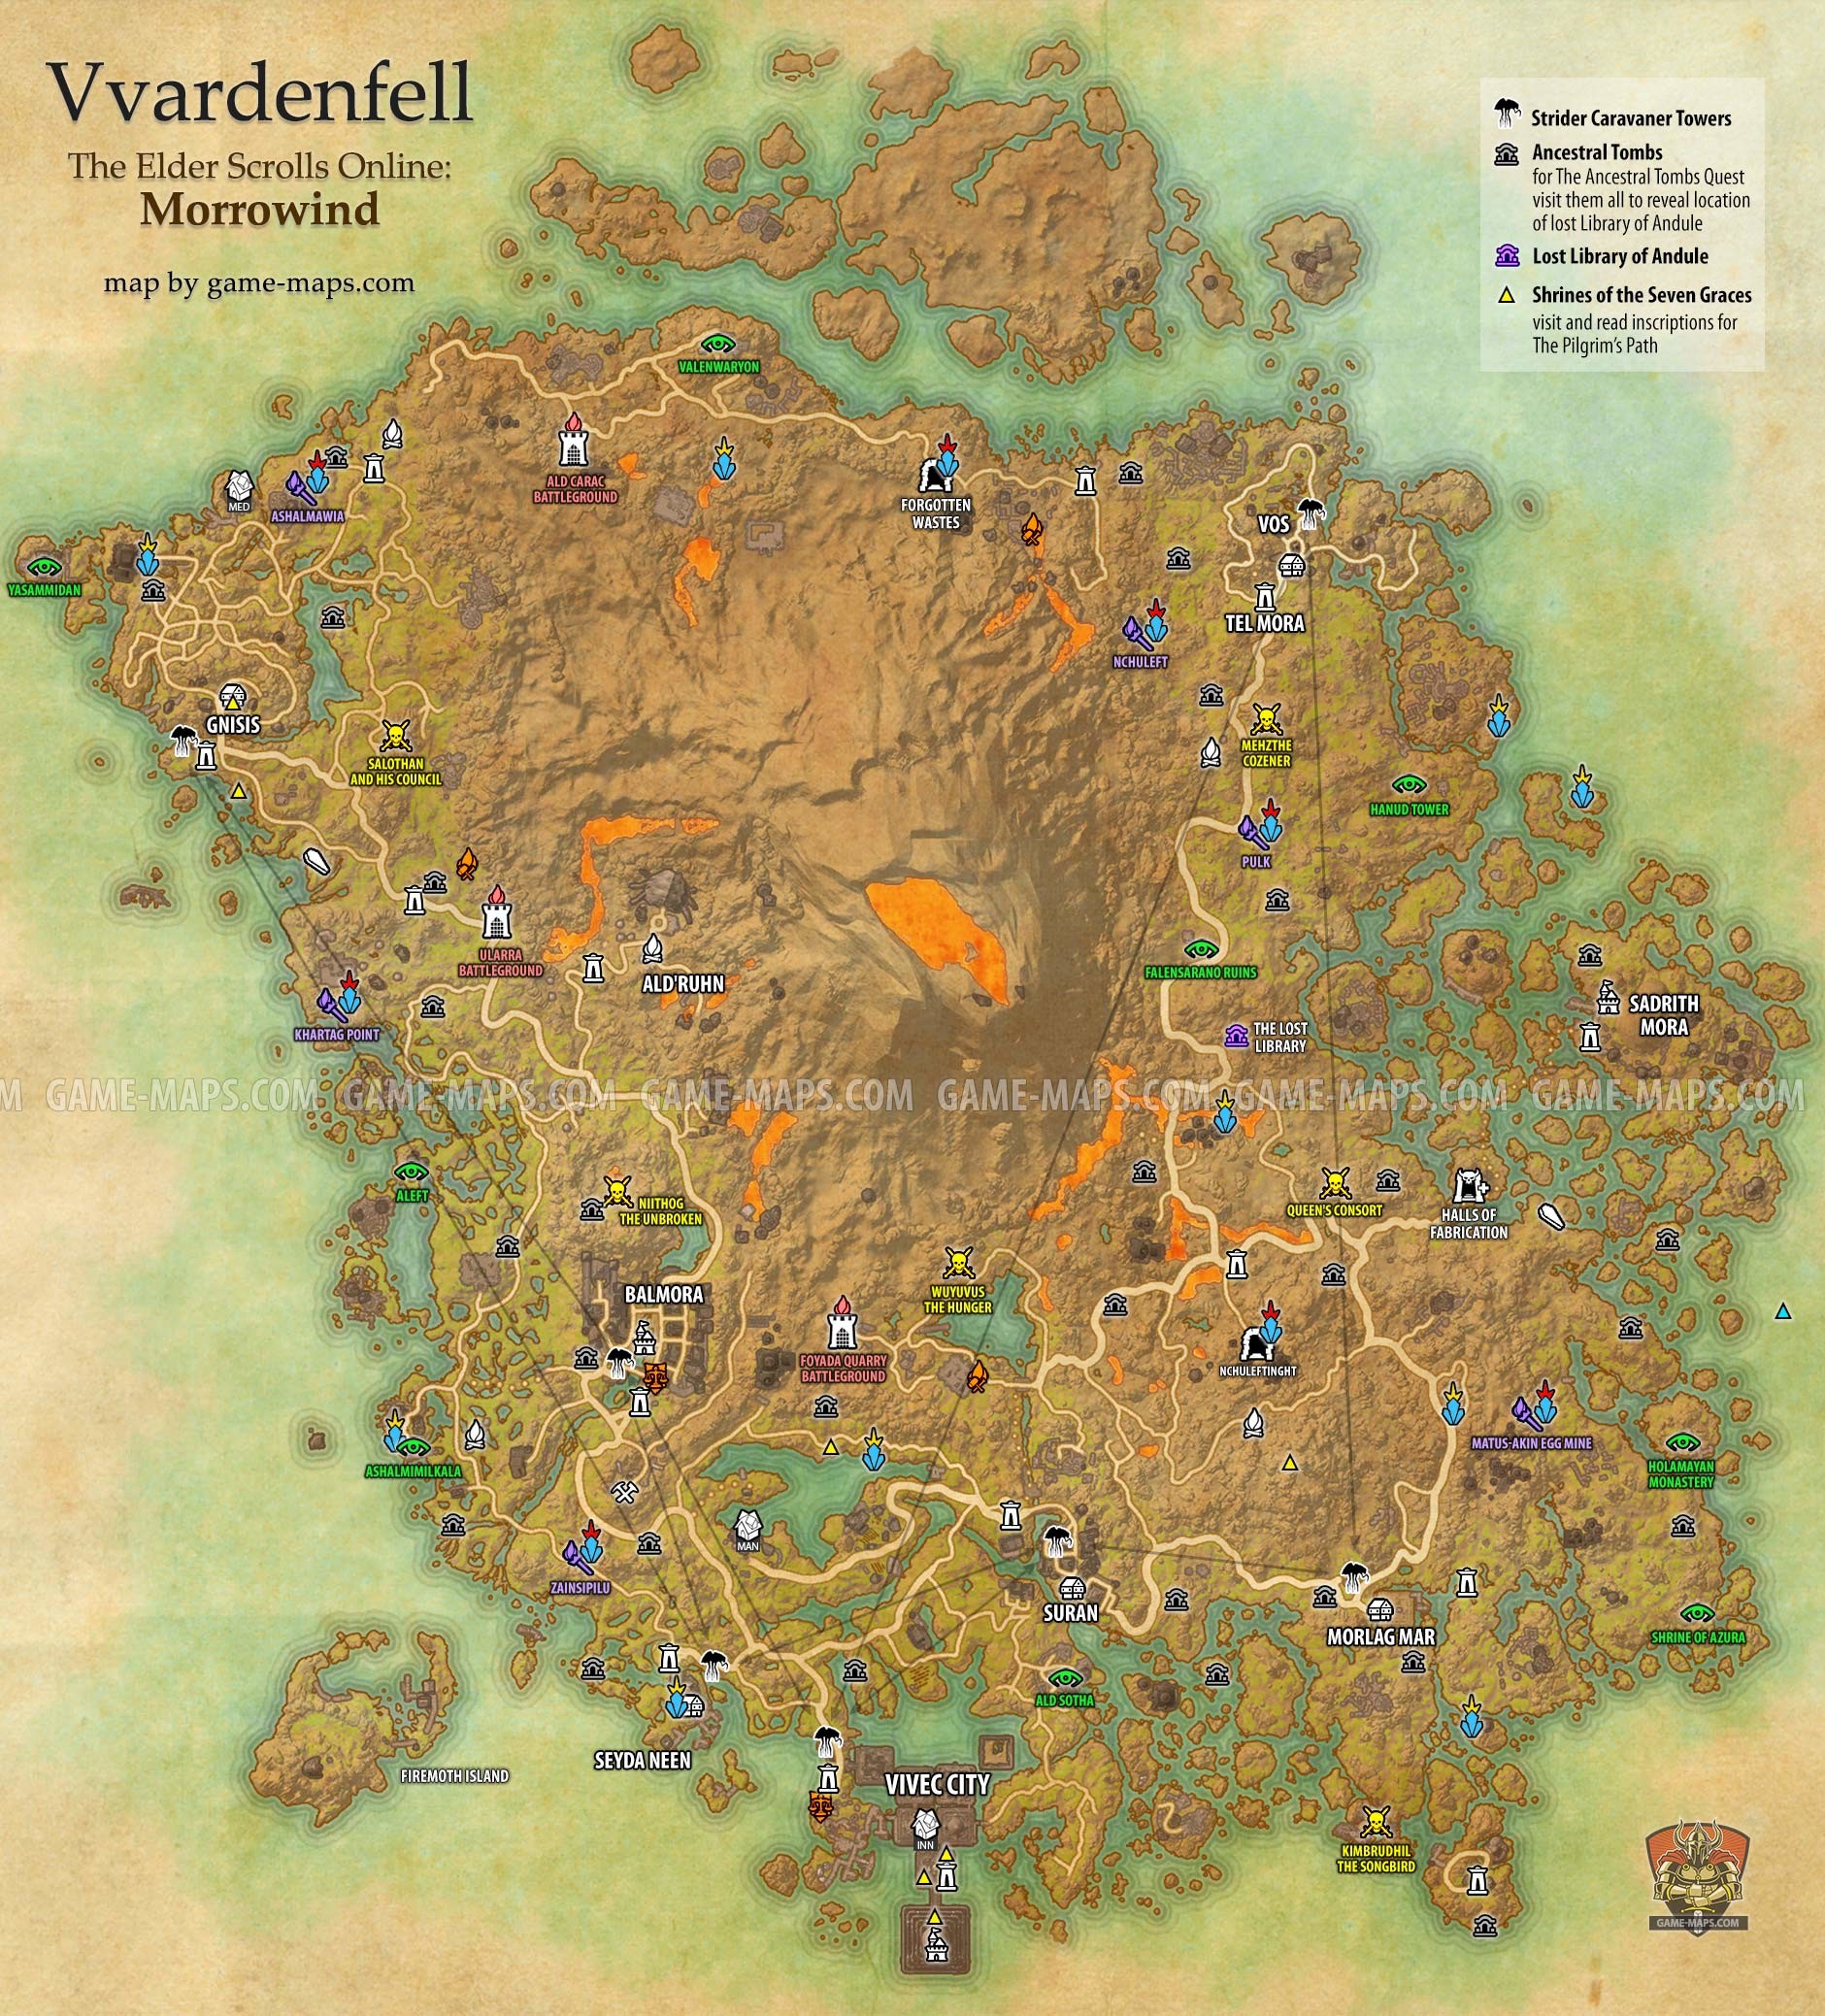 1880x2077 Vvardenfell zone map for The Elder Scrolls Online: Morrowind. Vivec City.  Delves,